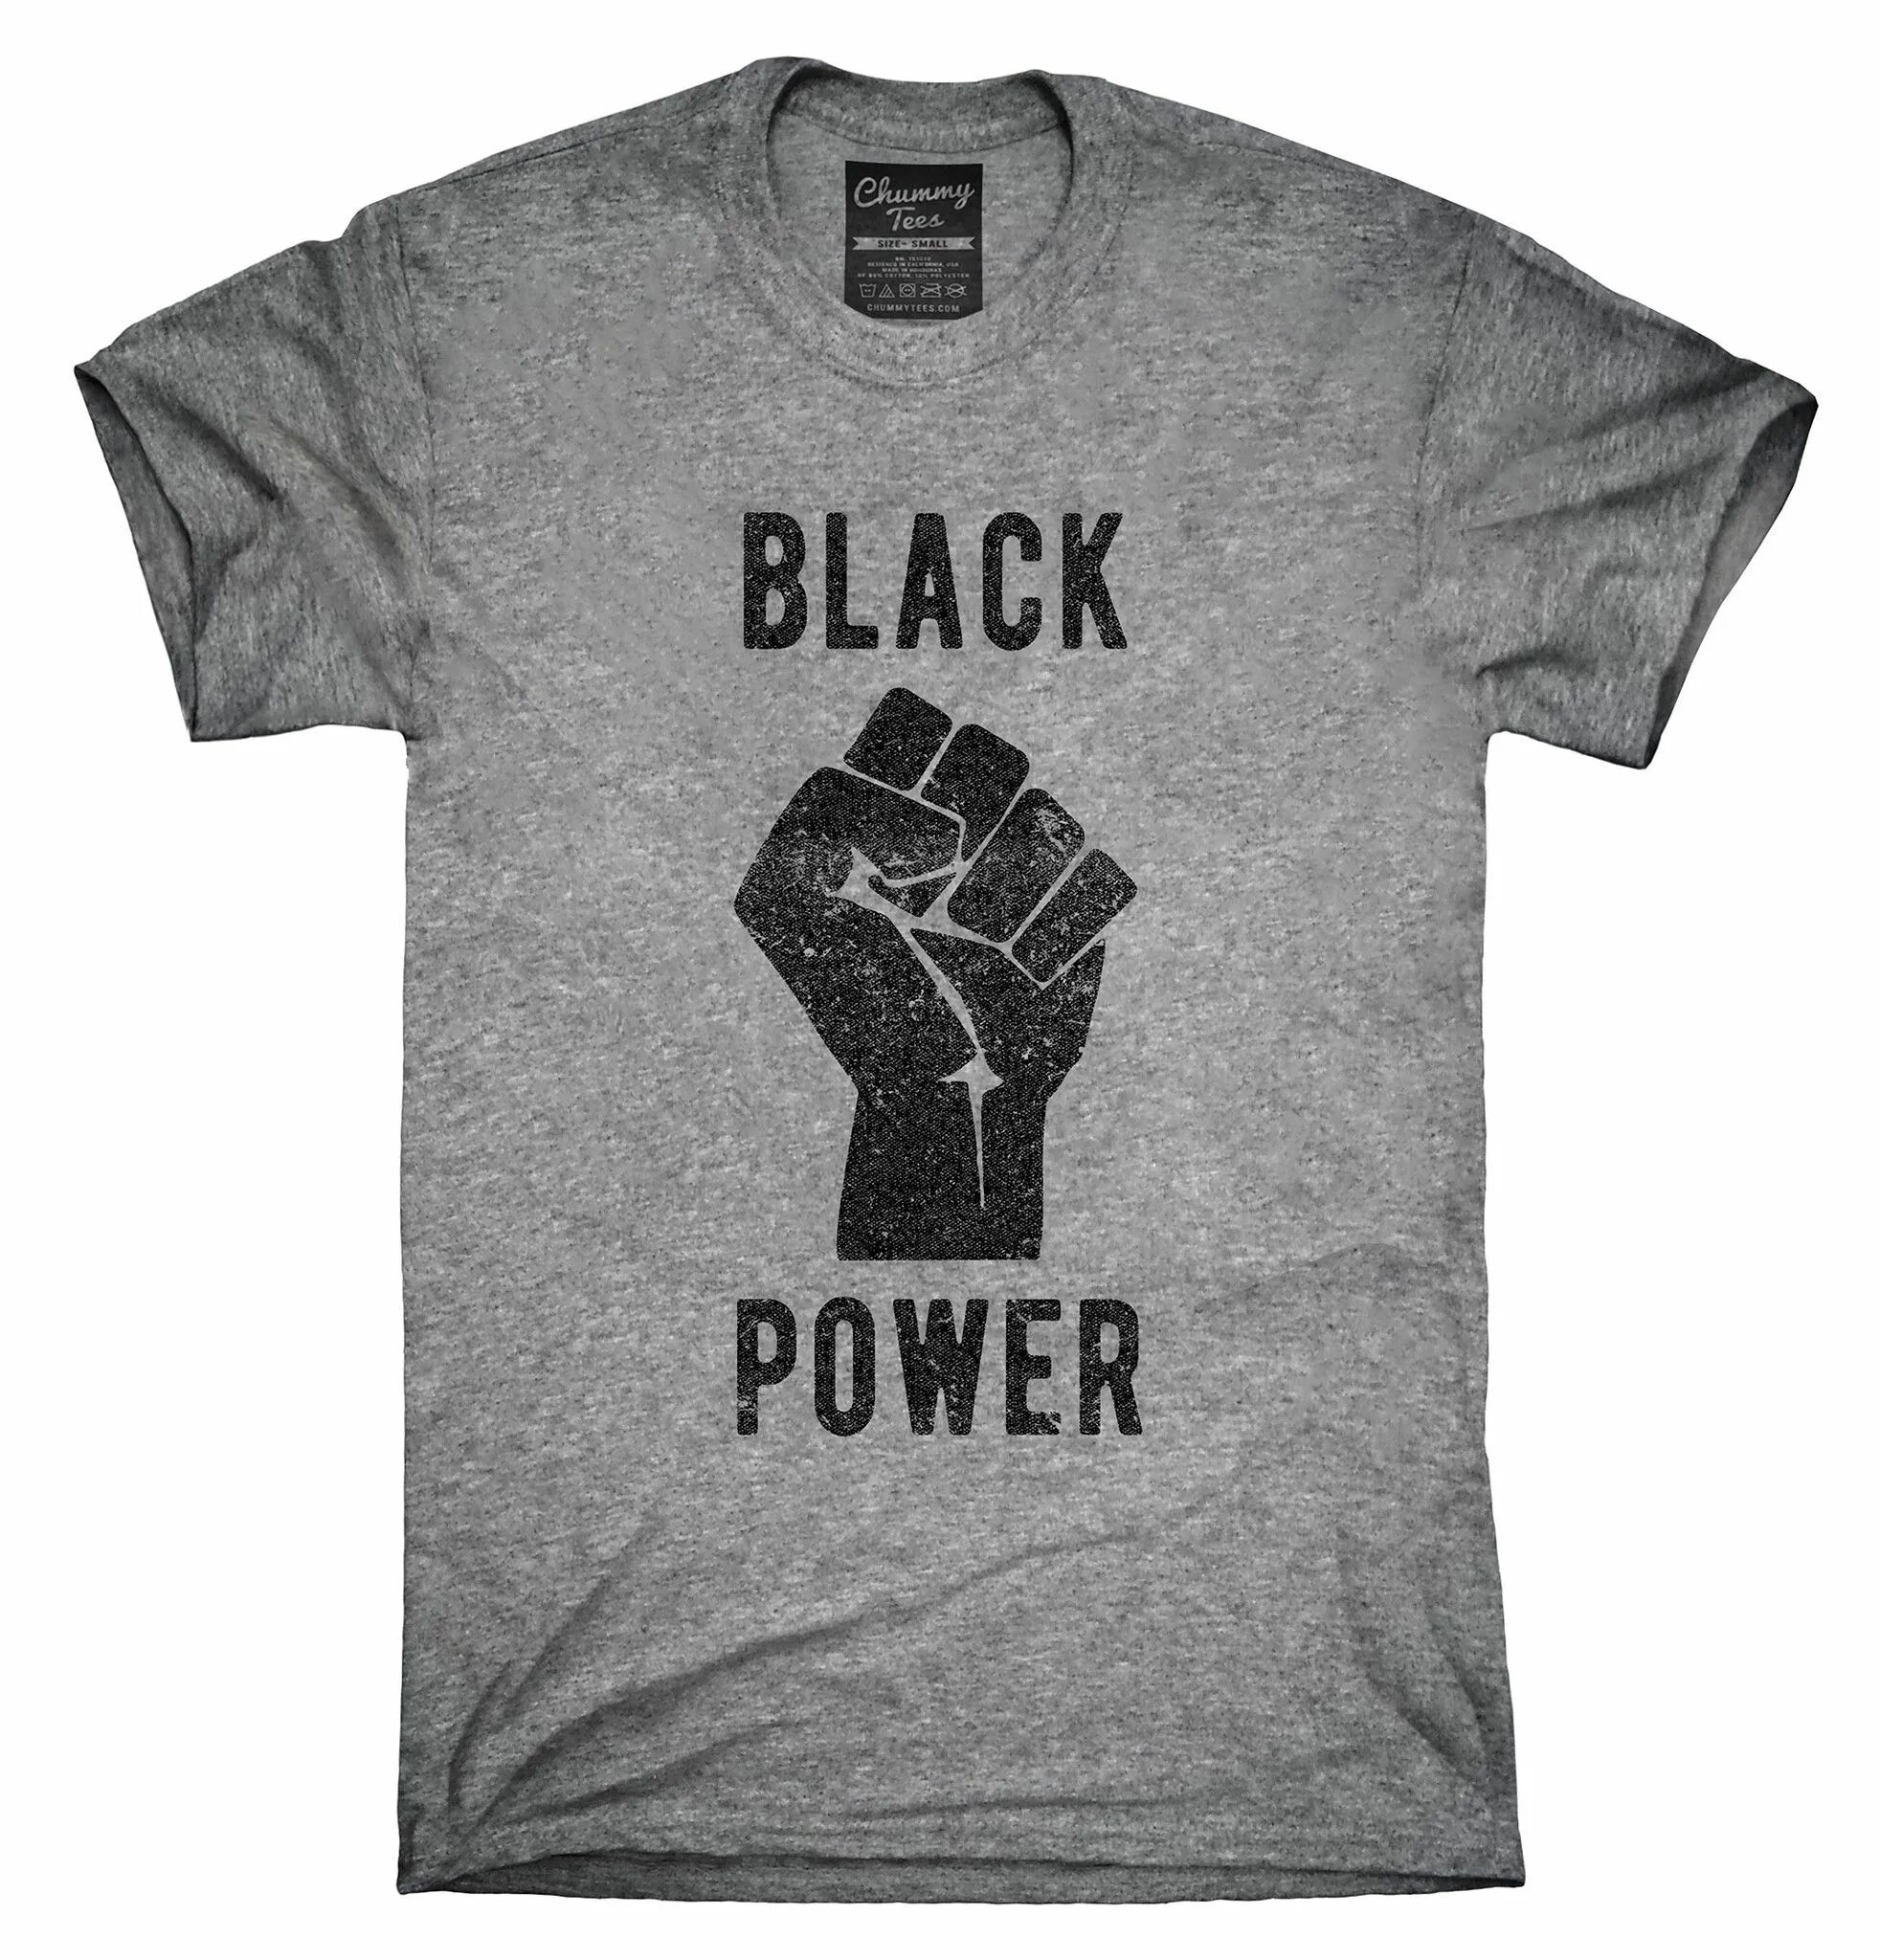 Black Power. Power Black одежда. Футболка Black History. Power черный. Блэк пауэр